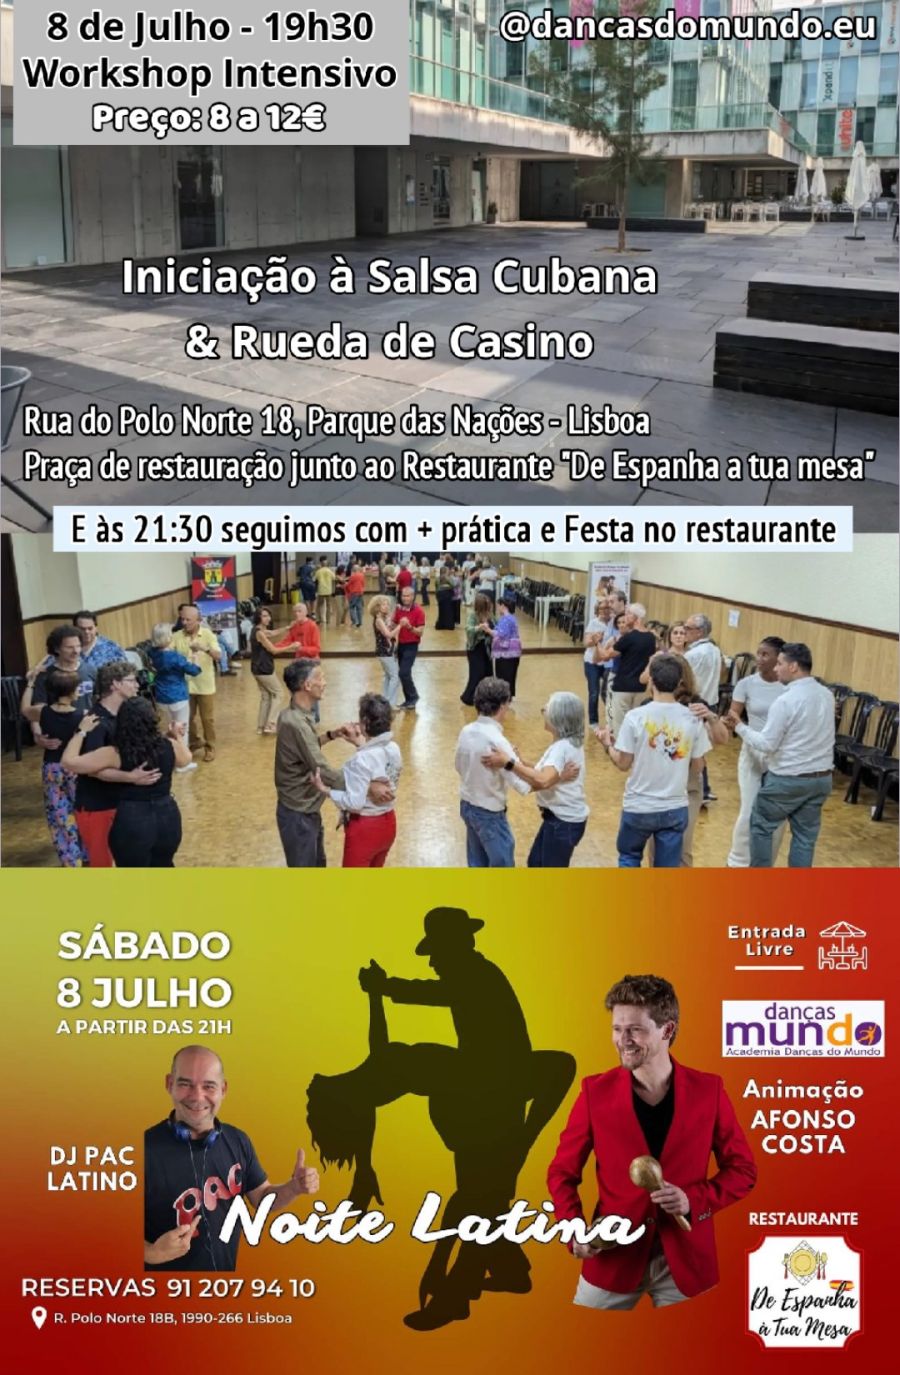 Iniciação à Salsa Cubana & Rueda de Casino + Festa